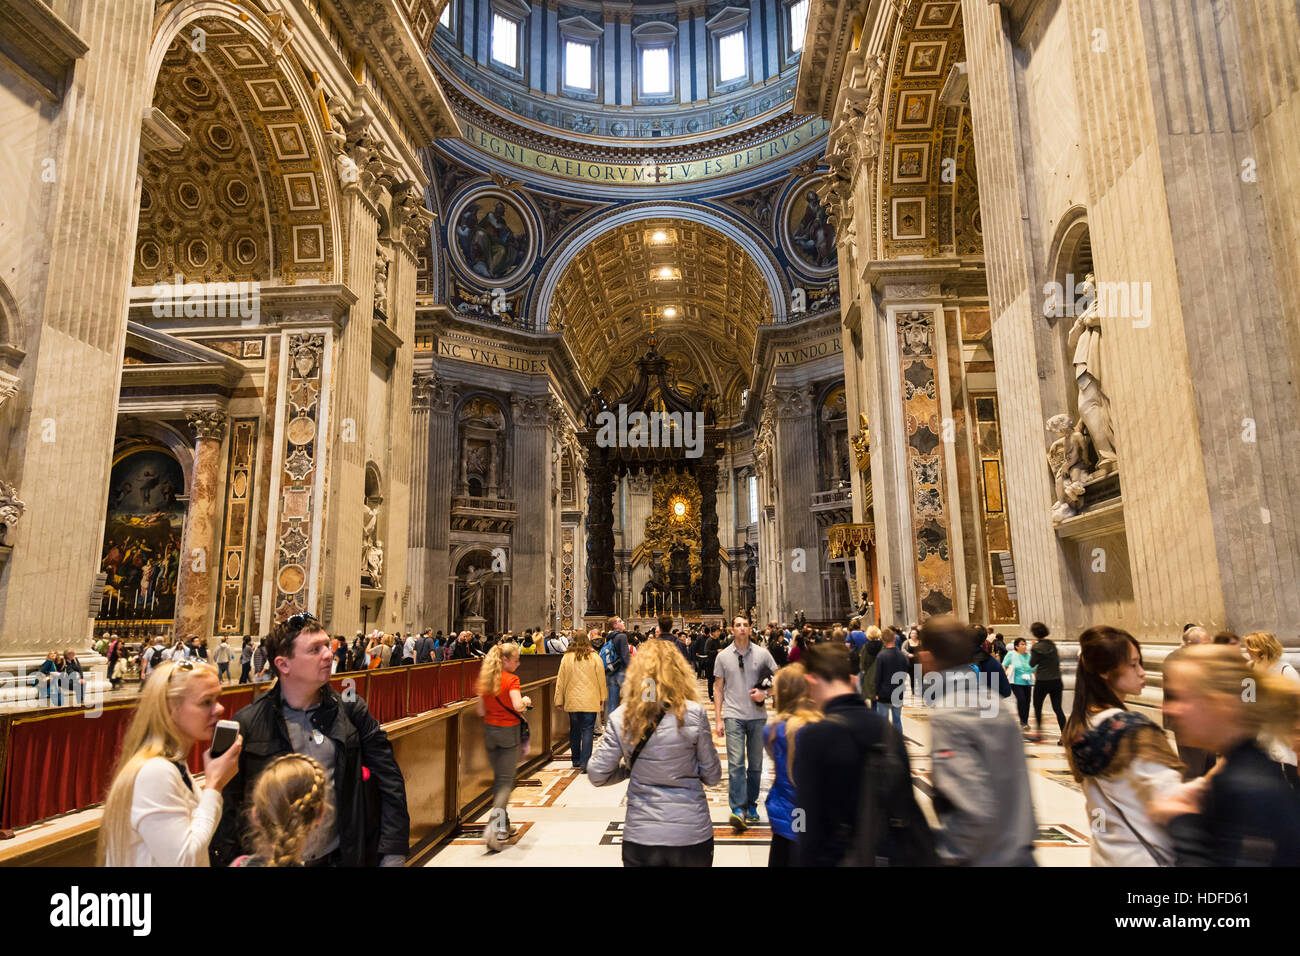 Vaticano, Italia - 2 Novembre 2016: i visitatori nella Basilica Papale di San Pietro. La Basilica è la cattedrale cattolica, la parte centrale e più importante di costruzione Foto Stock